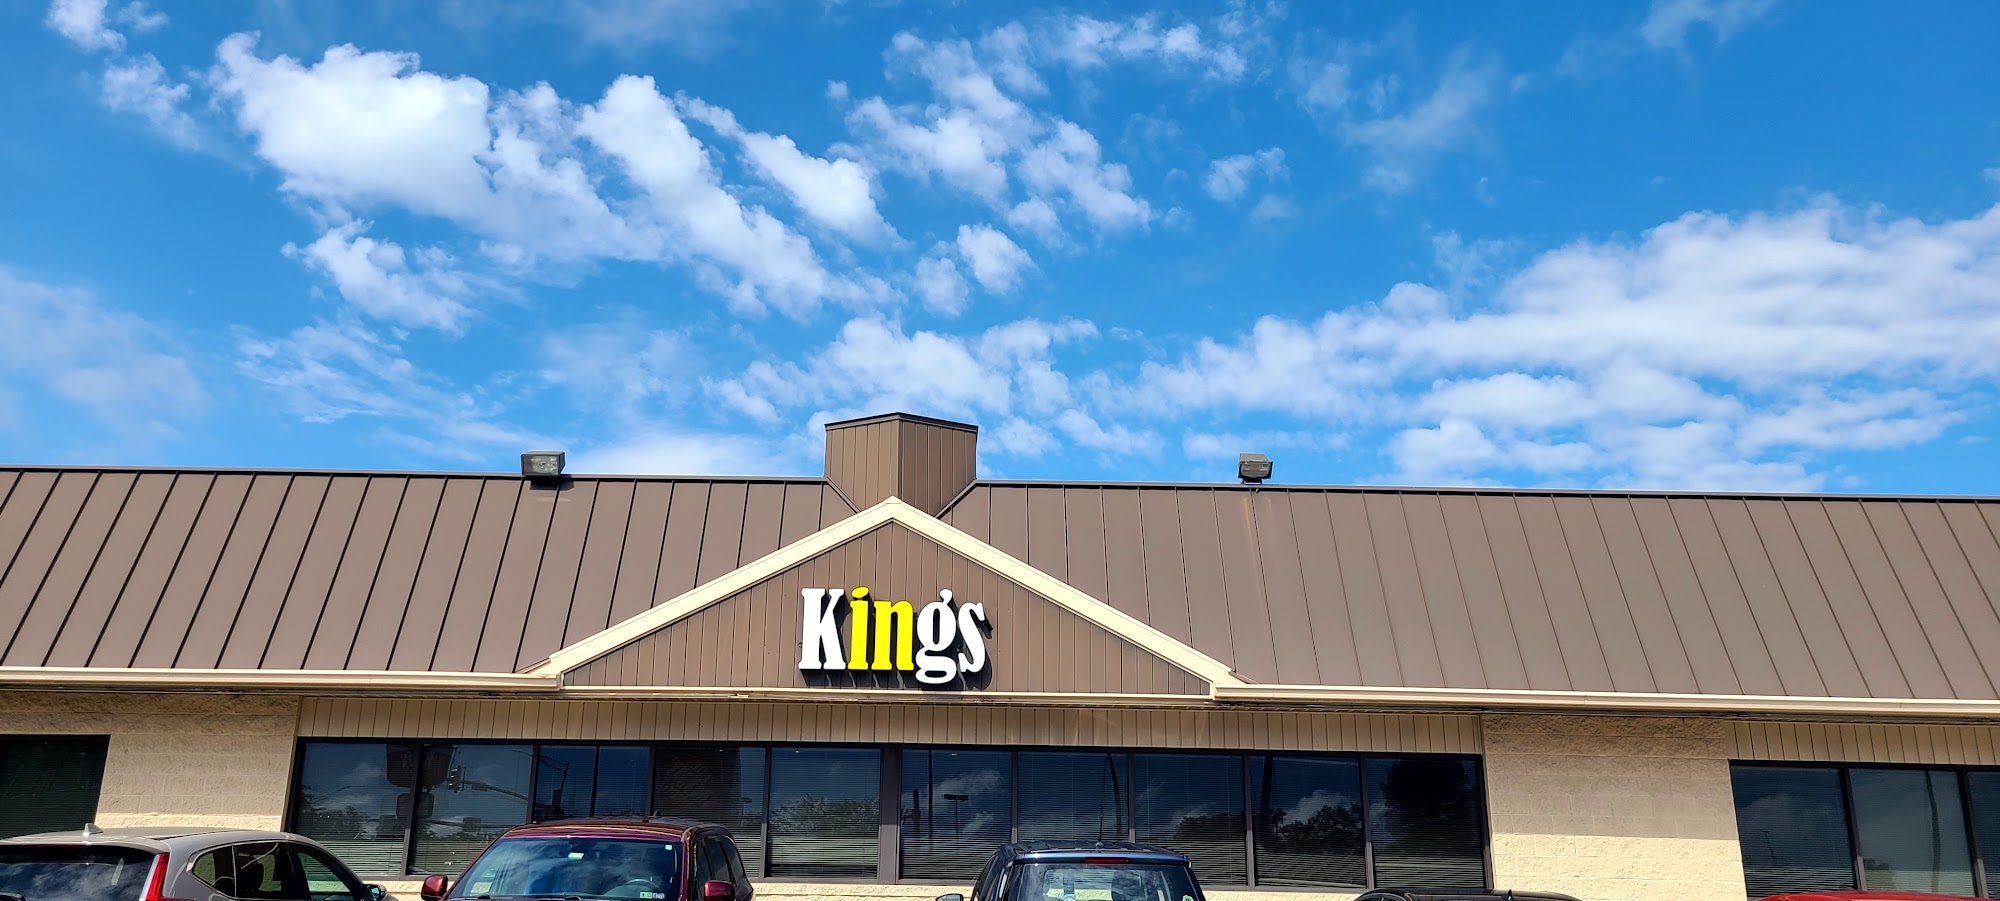 Kings Family Restaurant - Greensburg, PA